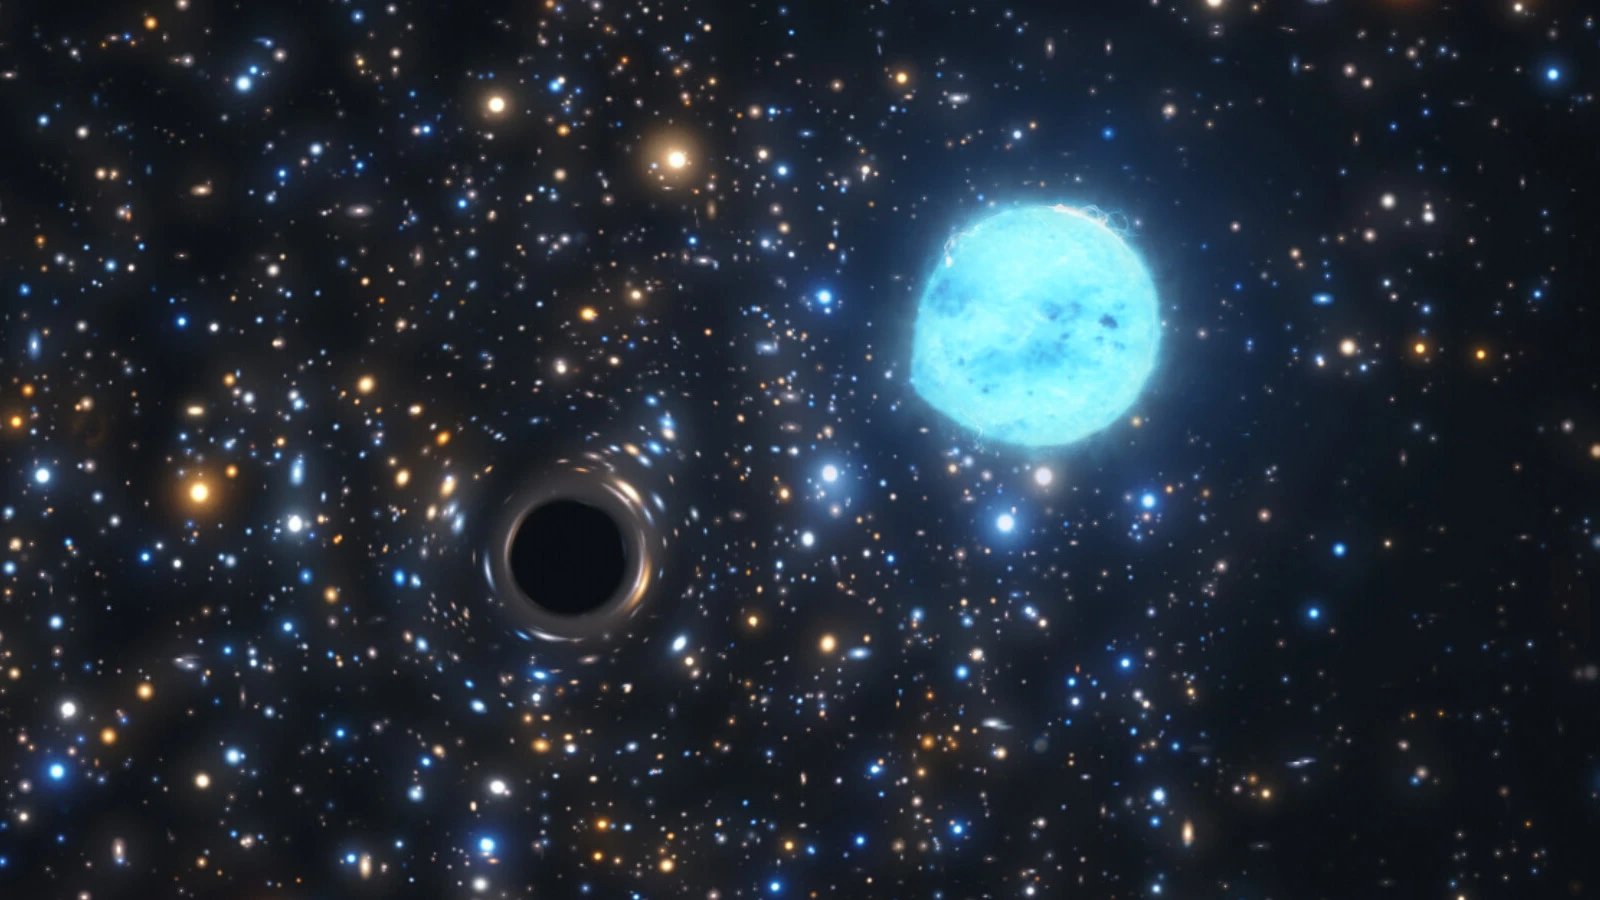 Le comportement étrange d'une étoile révèle un trou noir